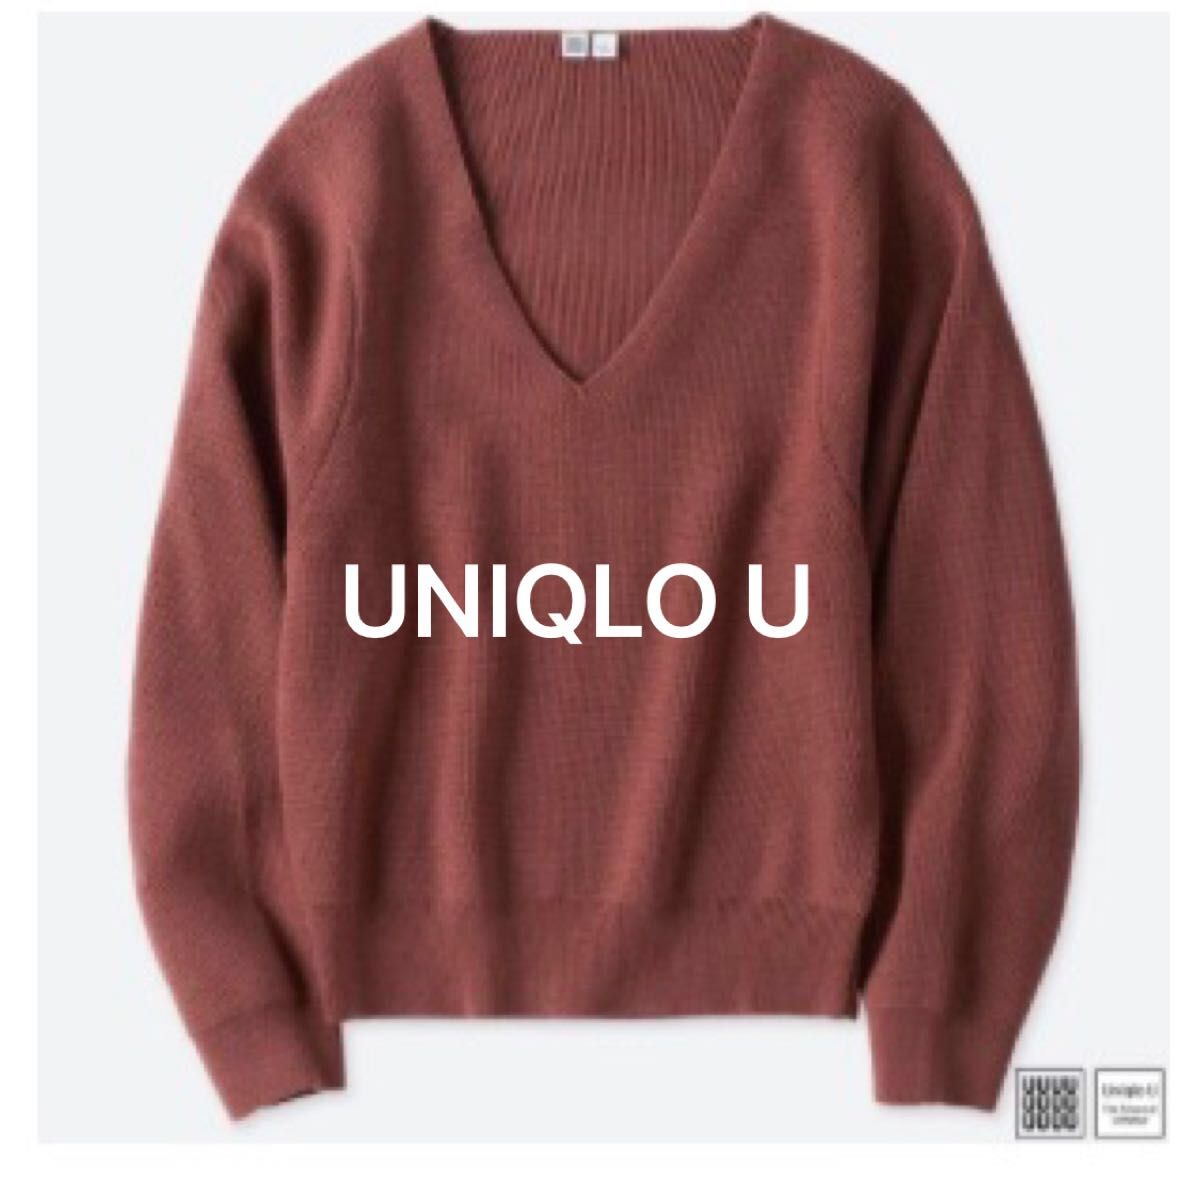 UNIQLO U  ユニクロユー  メリノブレンドVネックセーター　(長袖) Sサイズ